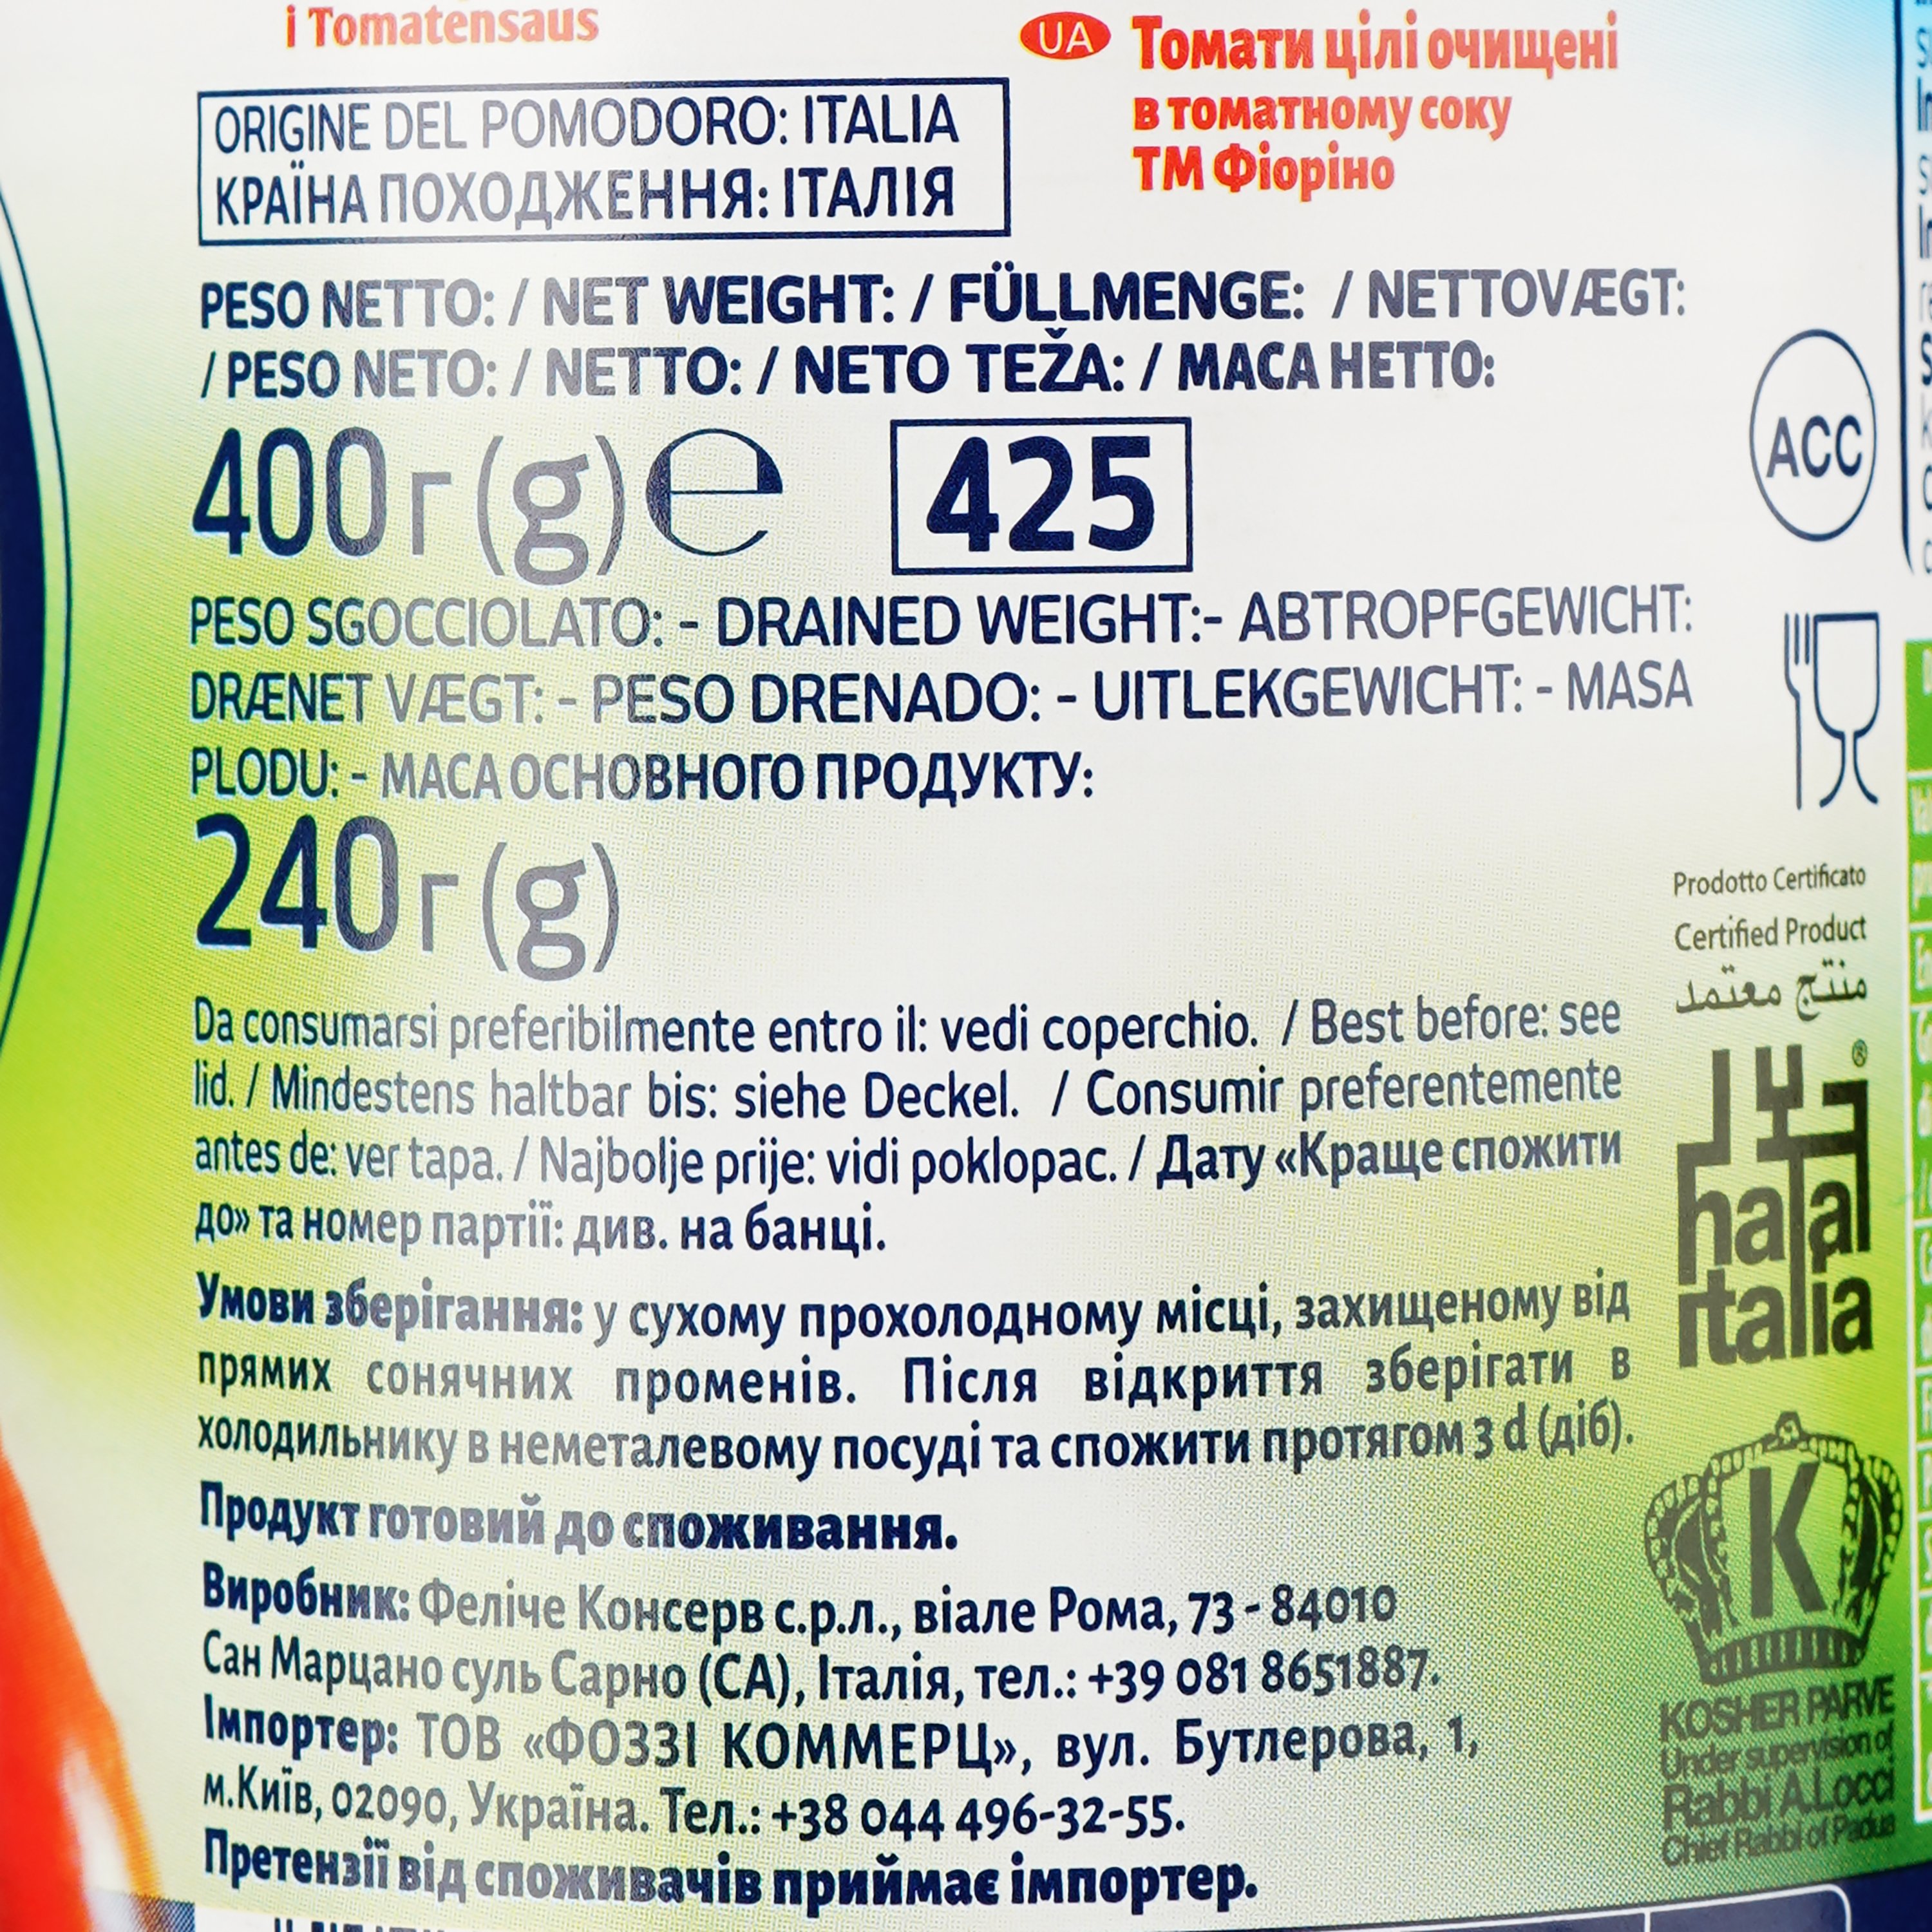 Томаты Fiorino очищенные целые в томатном соке 400 г (883333) - фото 3